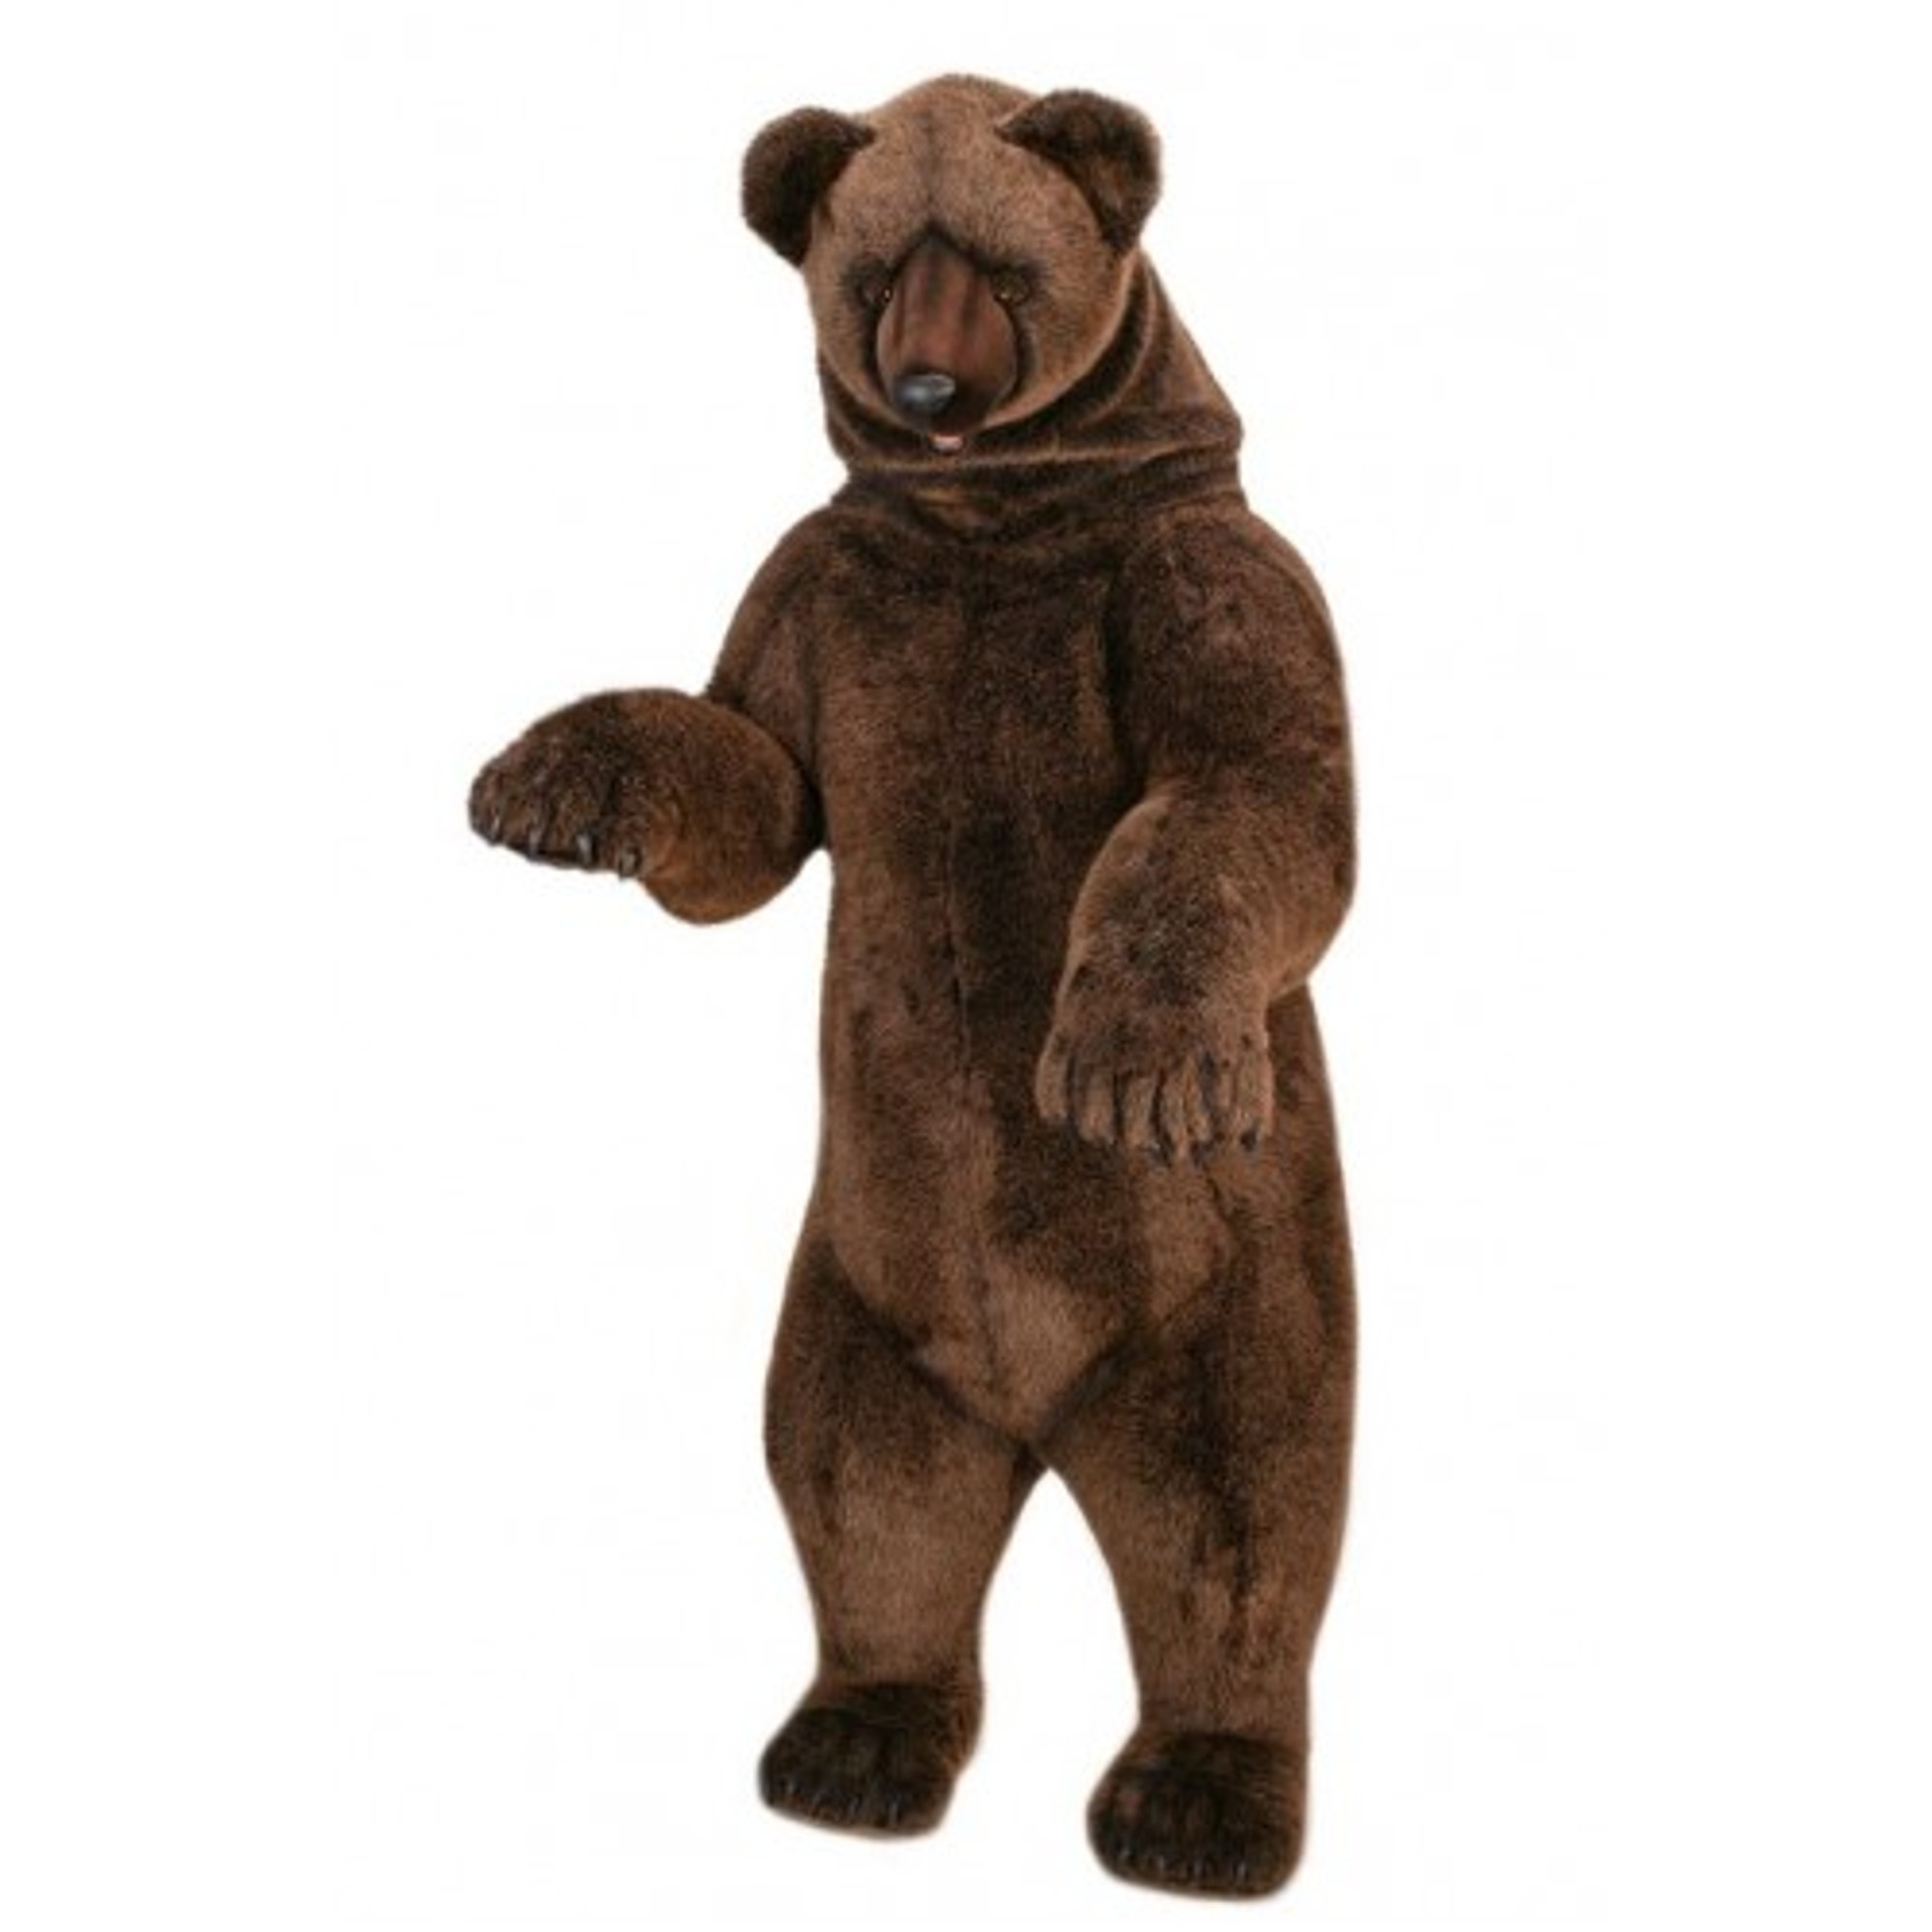 life size stuffed bear